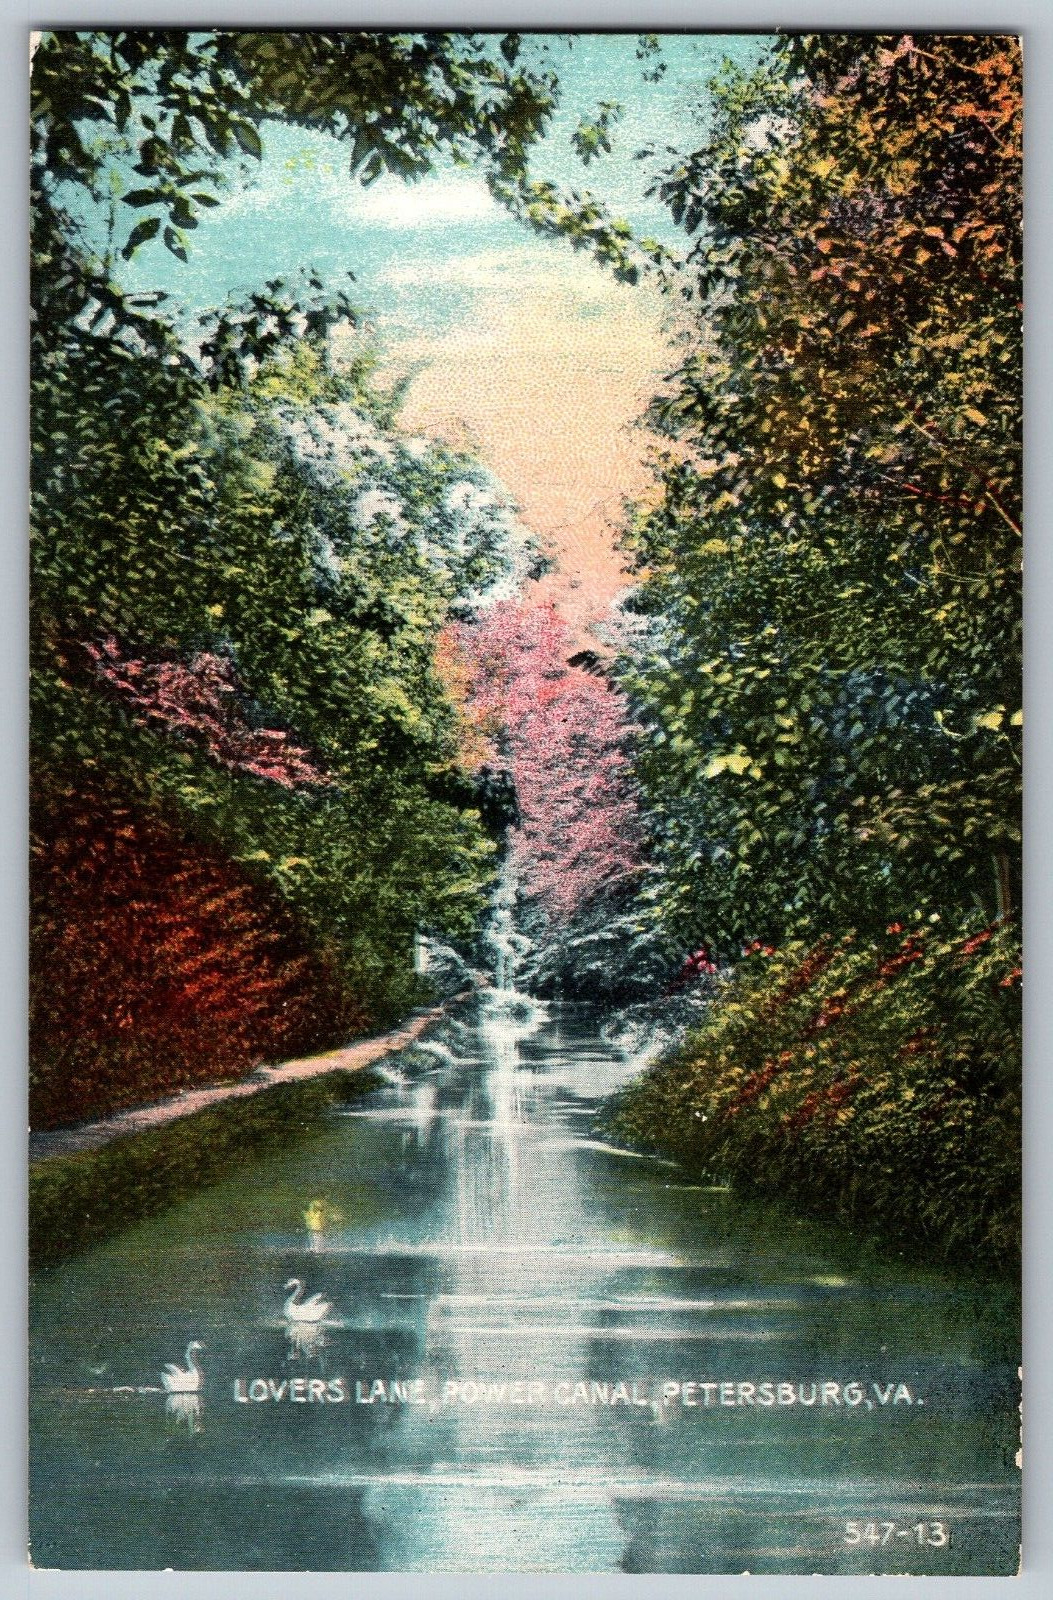 Petersburg, Virginia VA - Beautiful Lovers Lane - Power Canal - Vintage Postcard